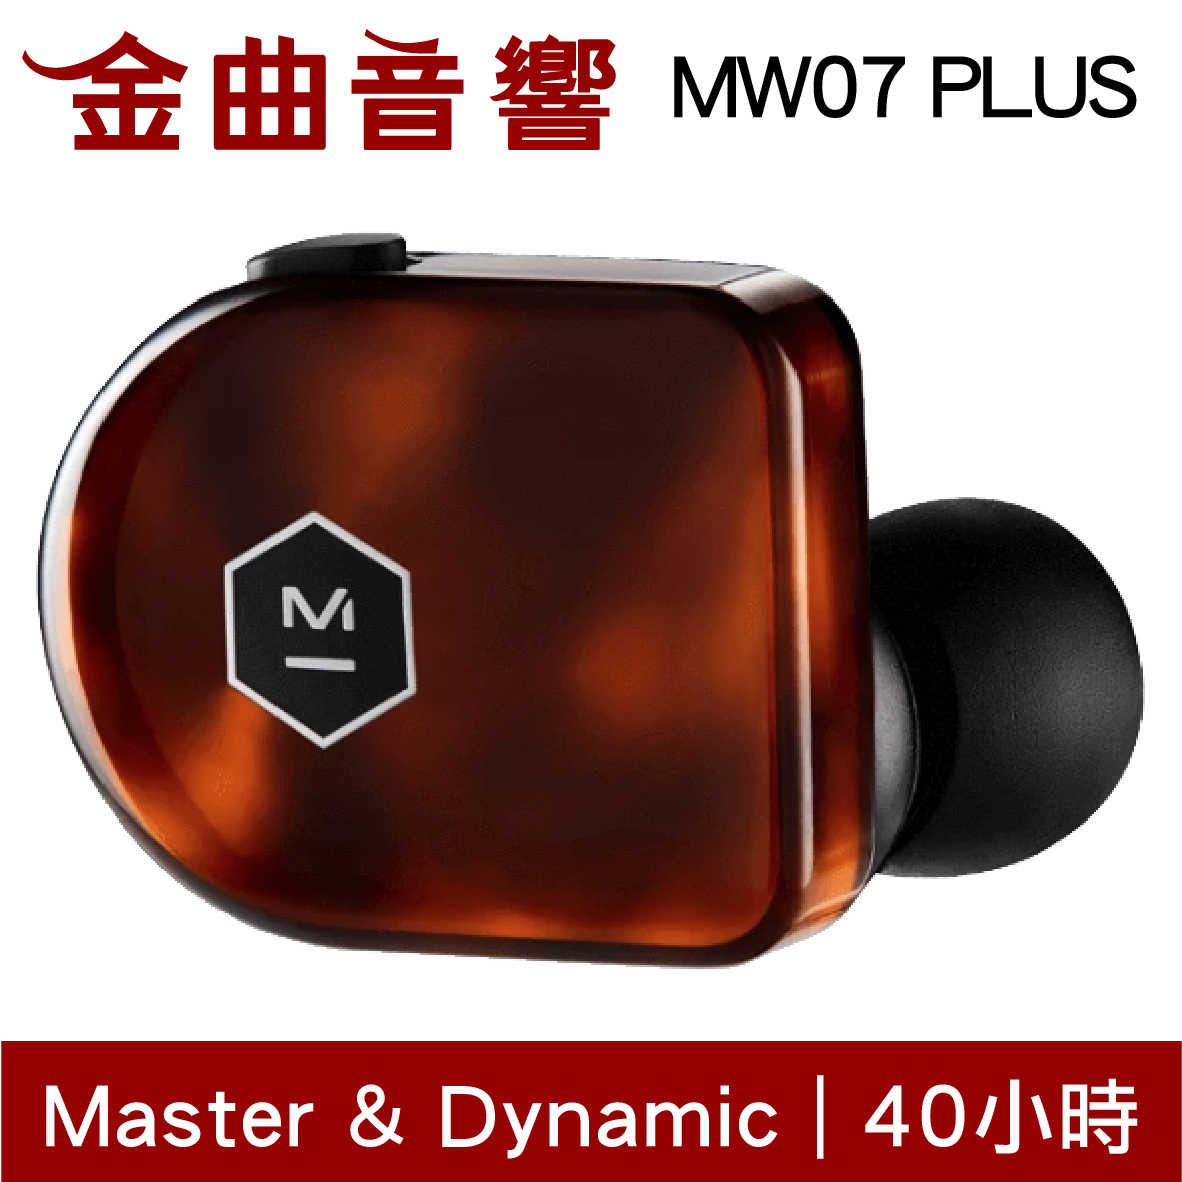 【福利機C組】Master & Dynamic MW07 PLUS 玳瑁 真無線耳機 | 金曲音響